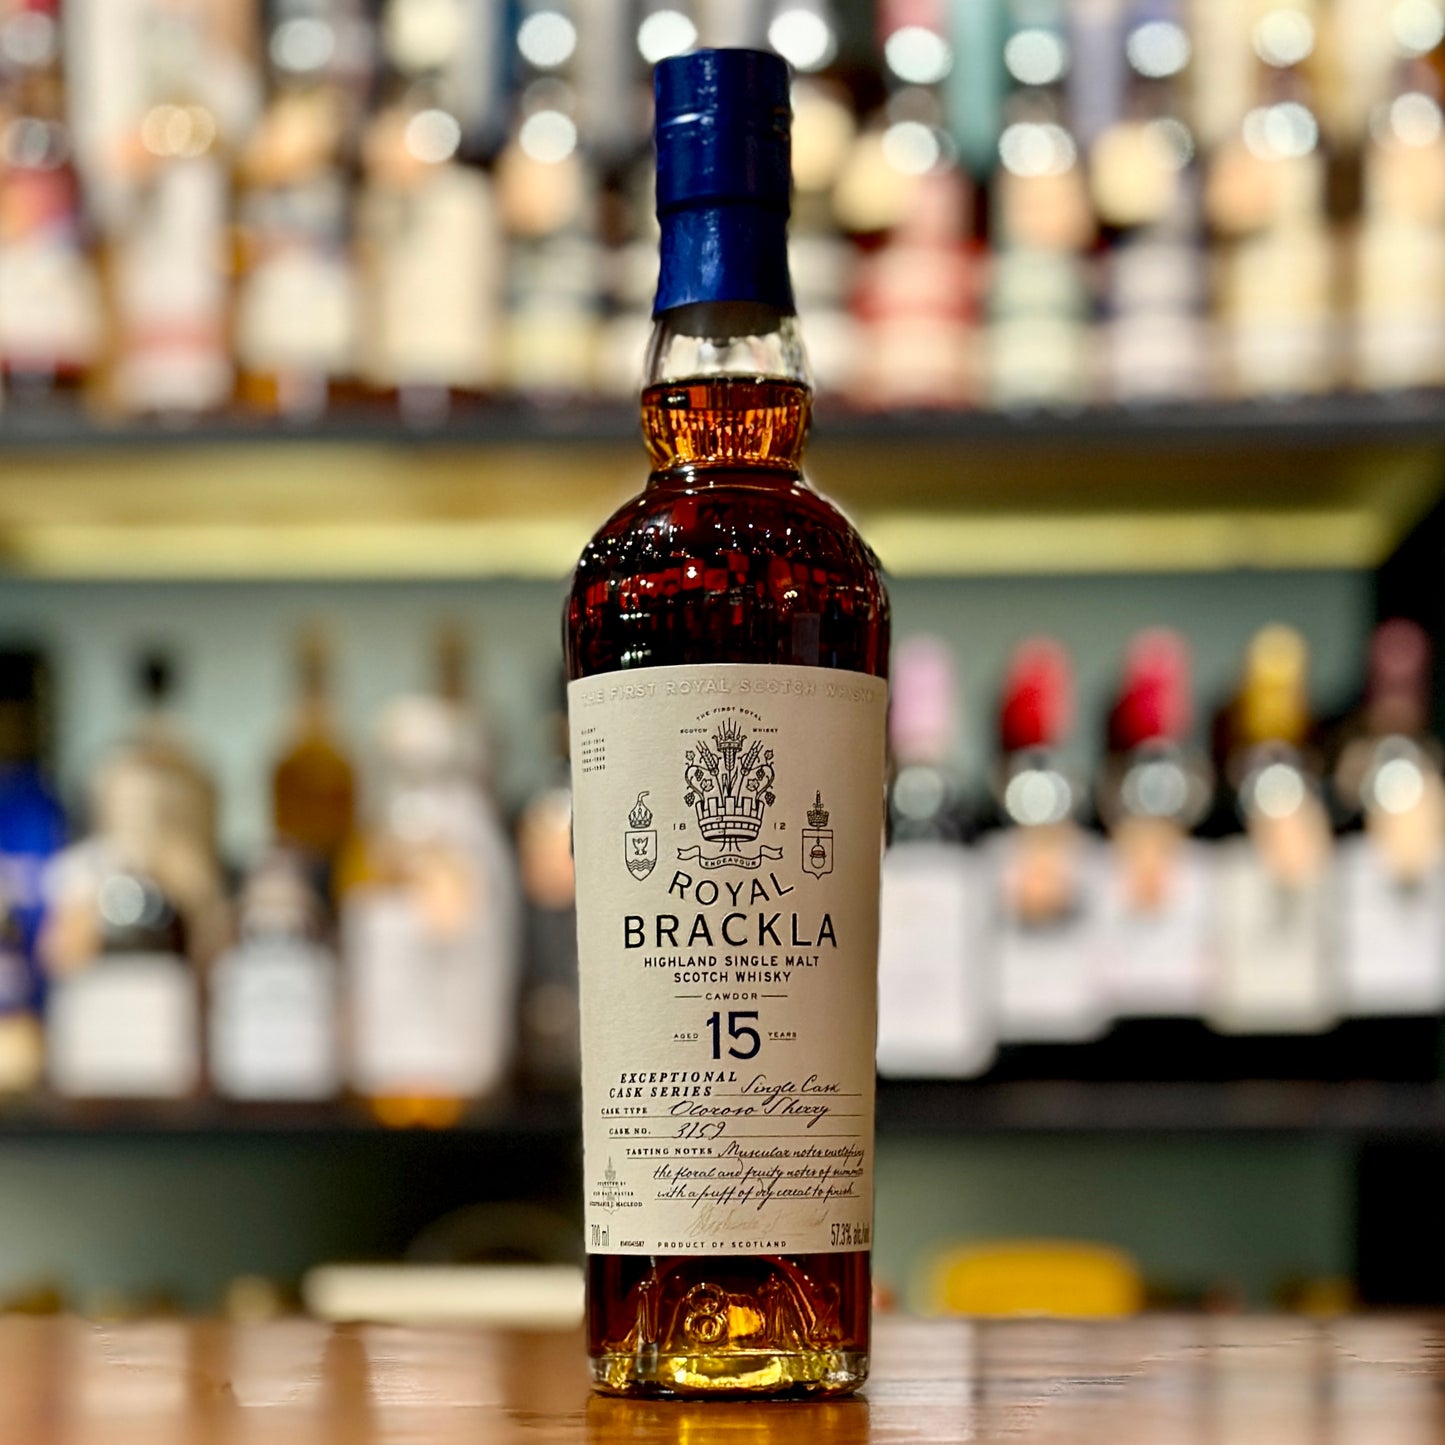 Royal Brackla 15 Year Old Oloroso Sherry Cask #3159 Single Malt Scotch Whisky